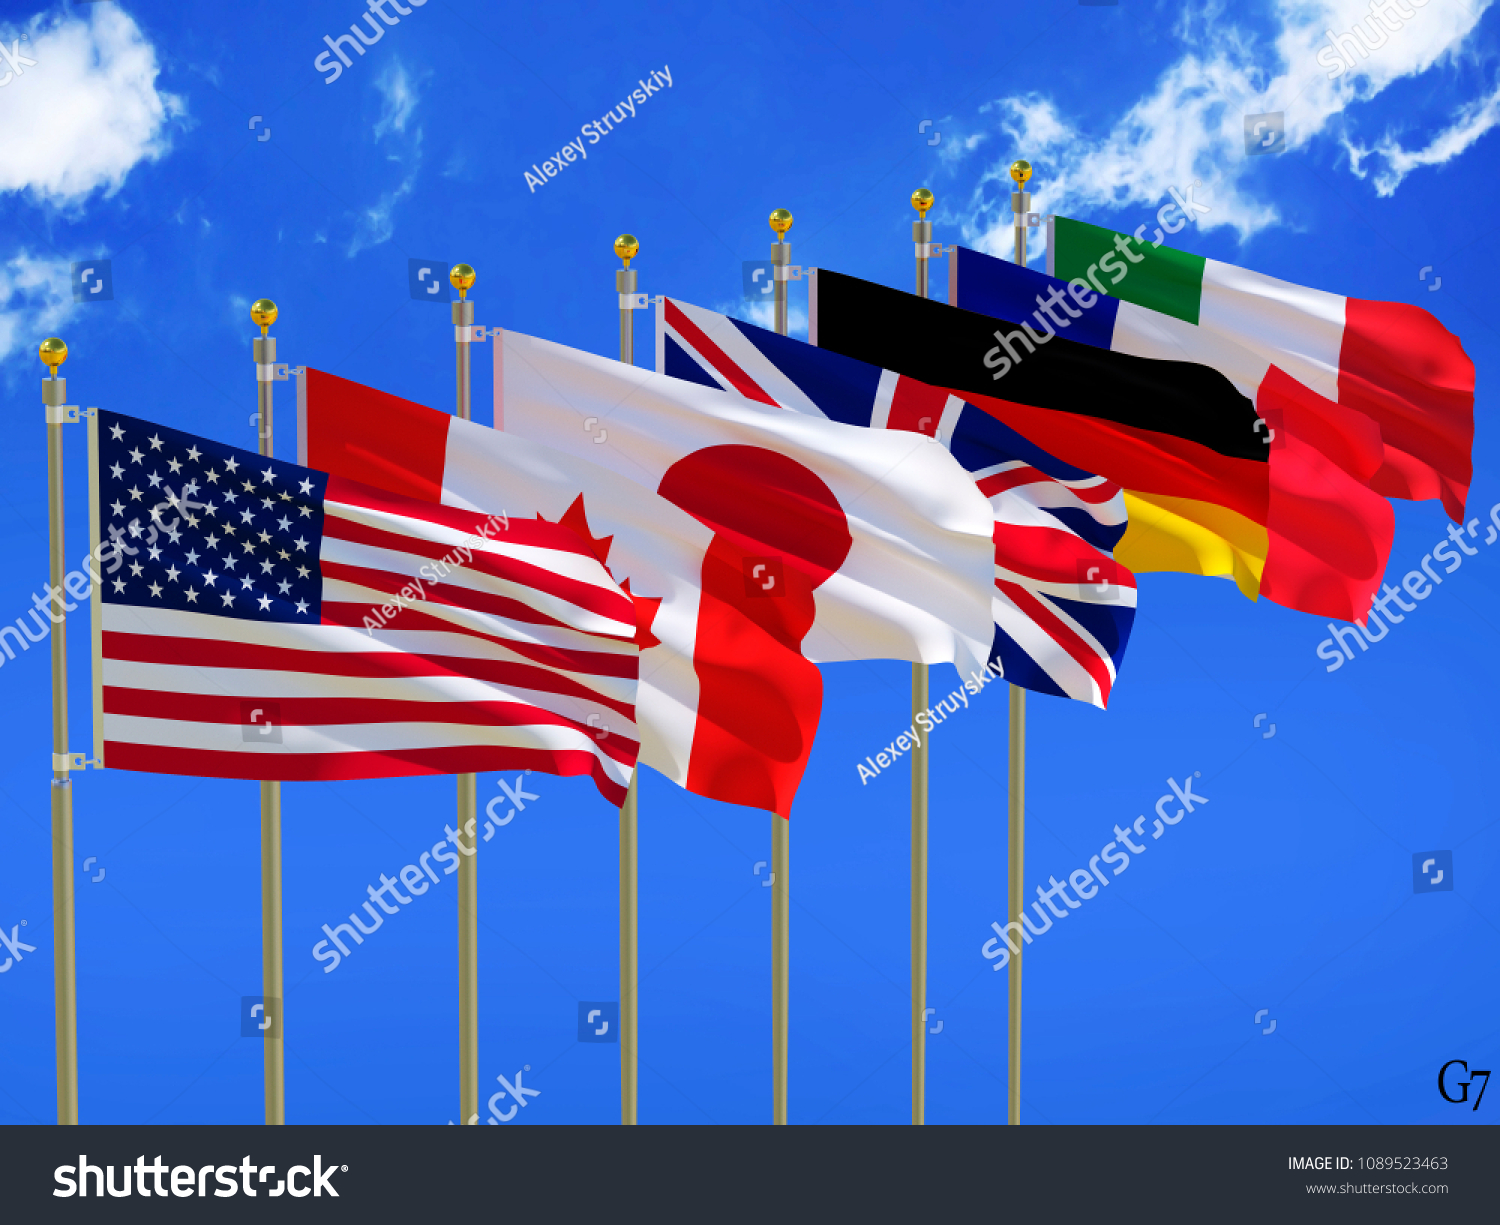 明るい青の空の背景に旗竿と白い雲の3dイラストを持つ英国7カナダの国の国旗をなびくシルク国旗 ドイツのイタリア 日本のフランス 英国 のイラスト素材